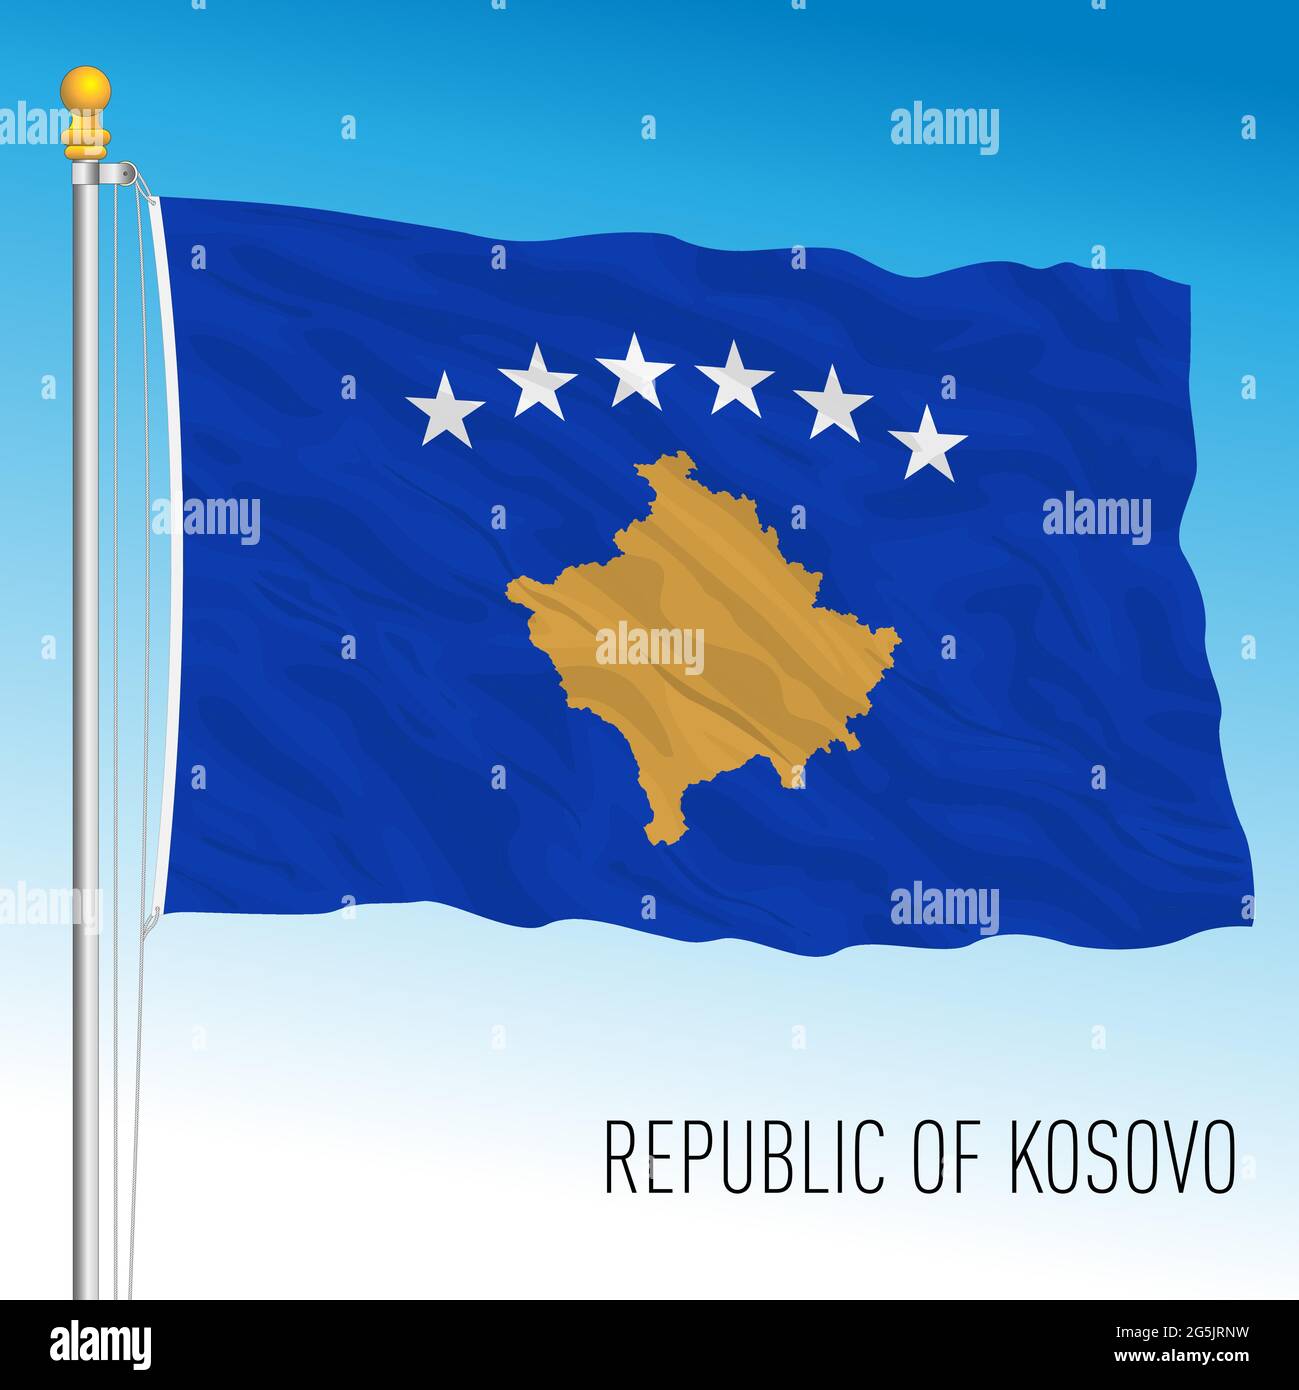 Kosovo official national flag, European country, vector illustration Stock Vector